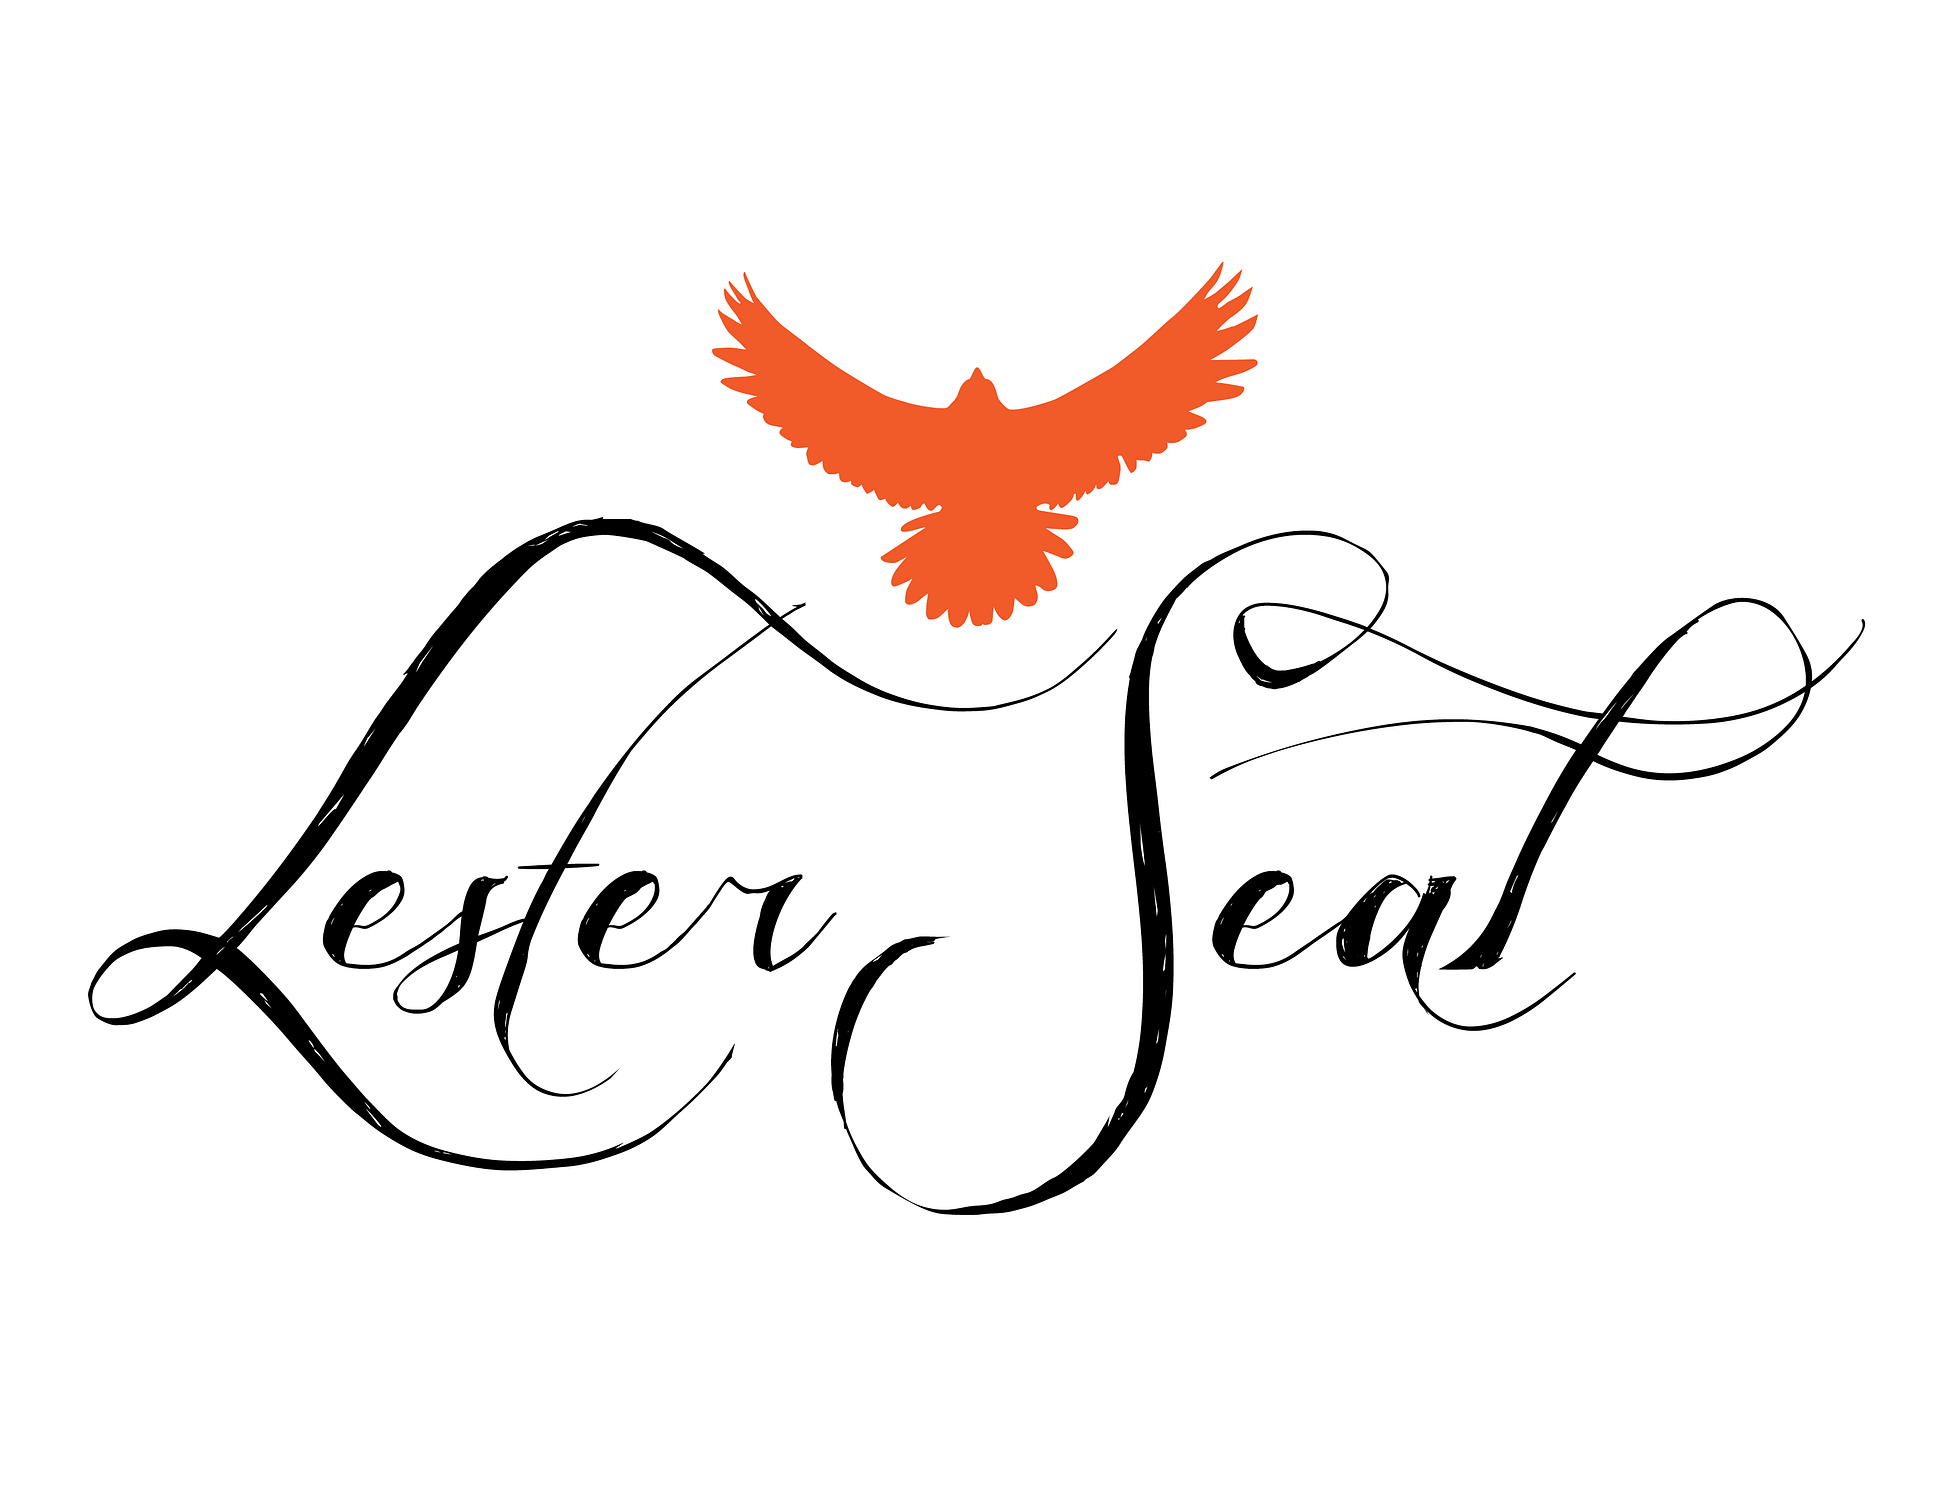 Lester's Logo Final